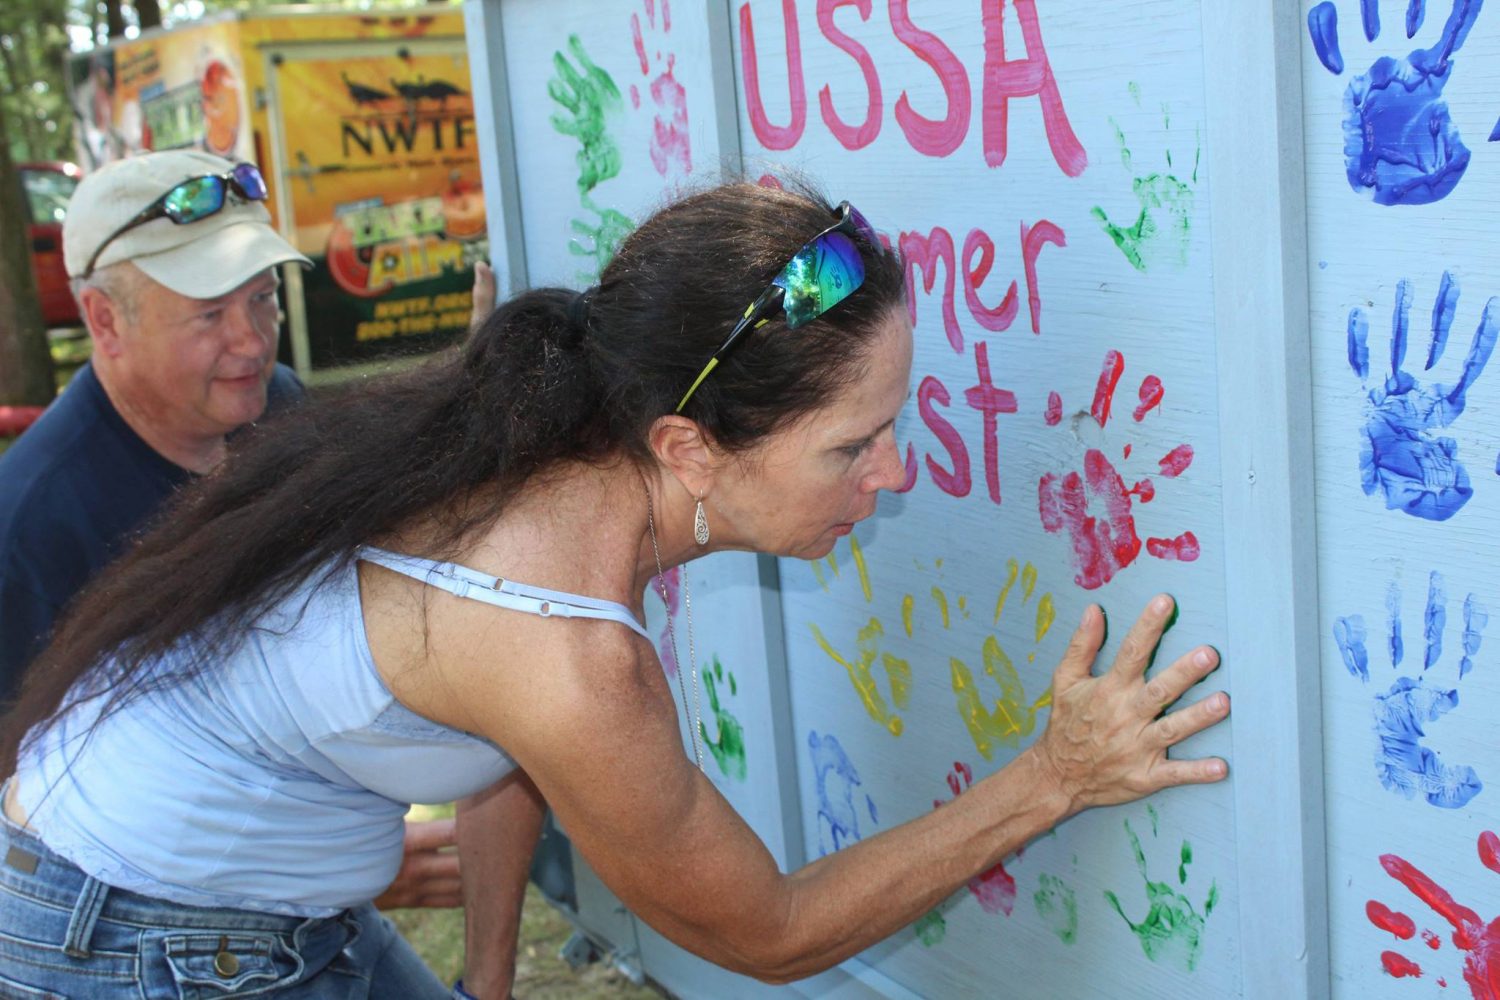 USSA founder Brigid ODonoghue leaves a painted handprint during the 2017 Summerfest event.